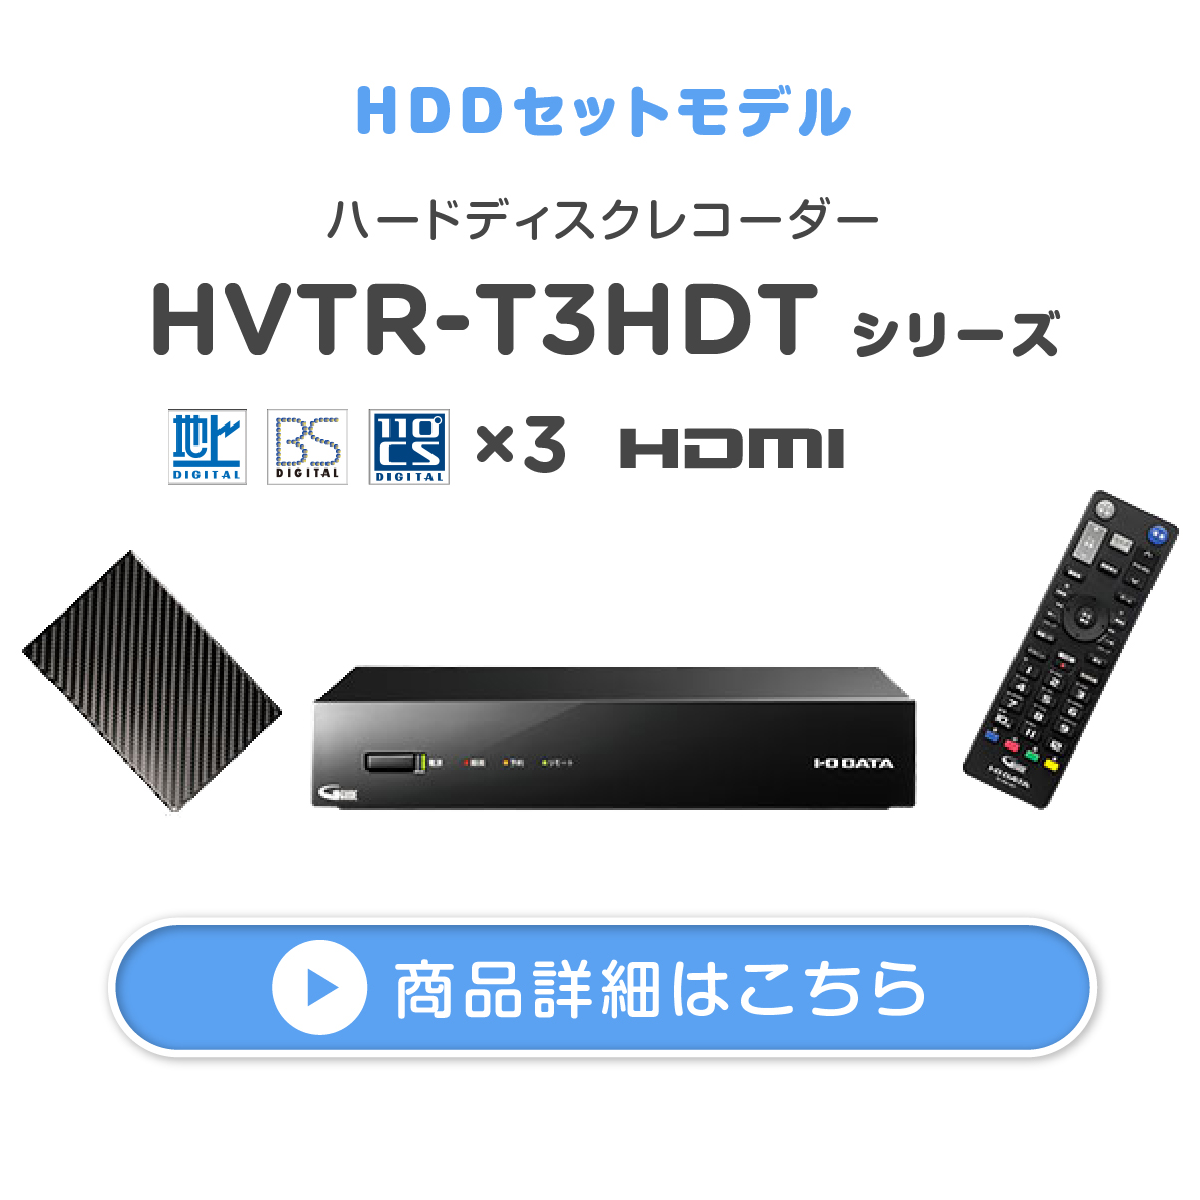 ハードディスクレコーダー HVTR-T3HDT